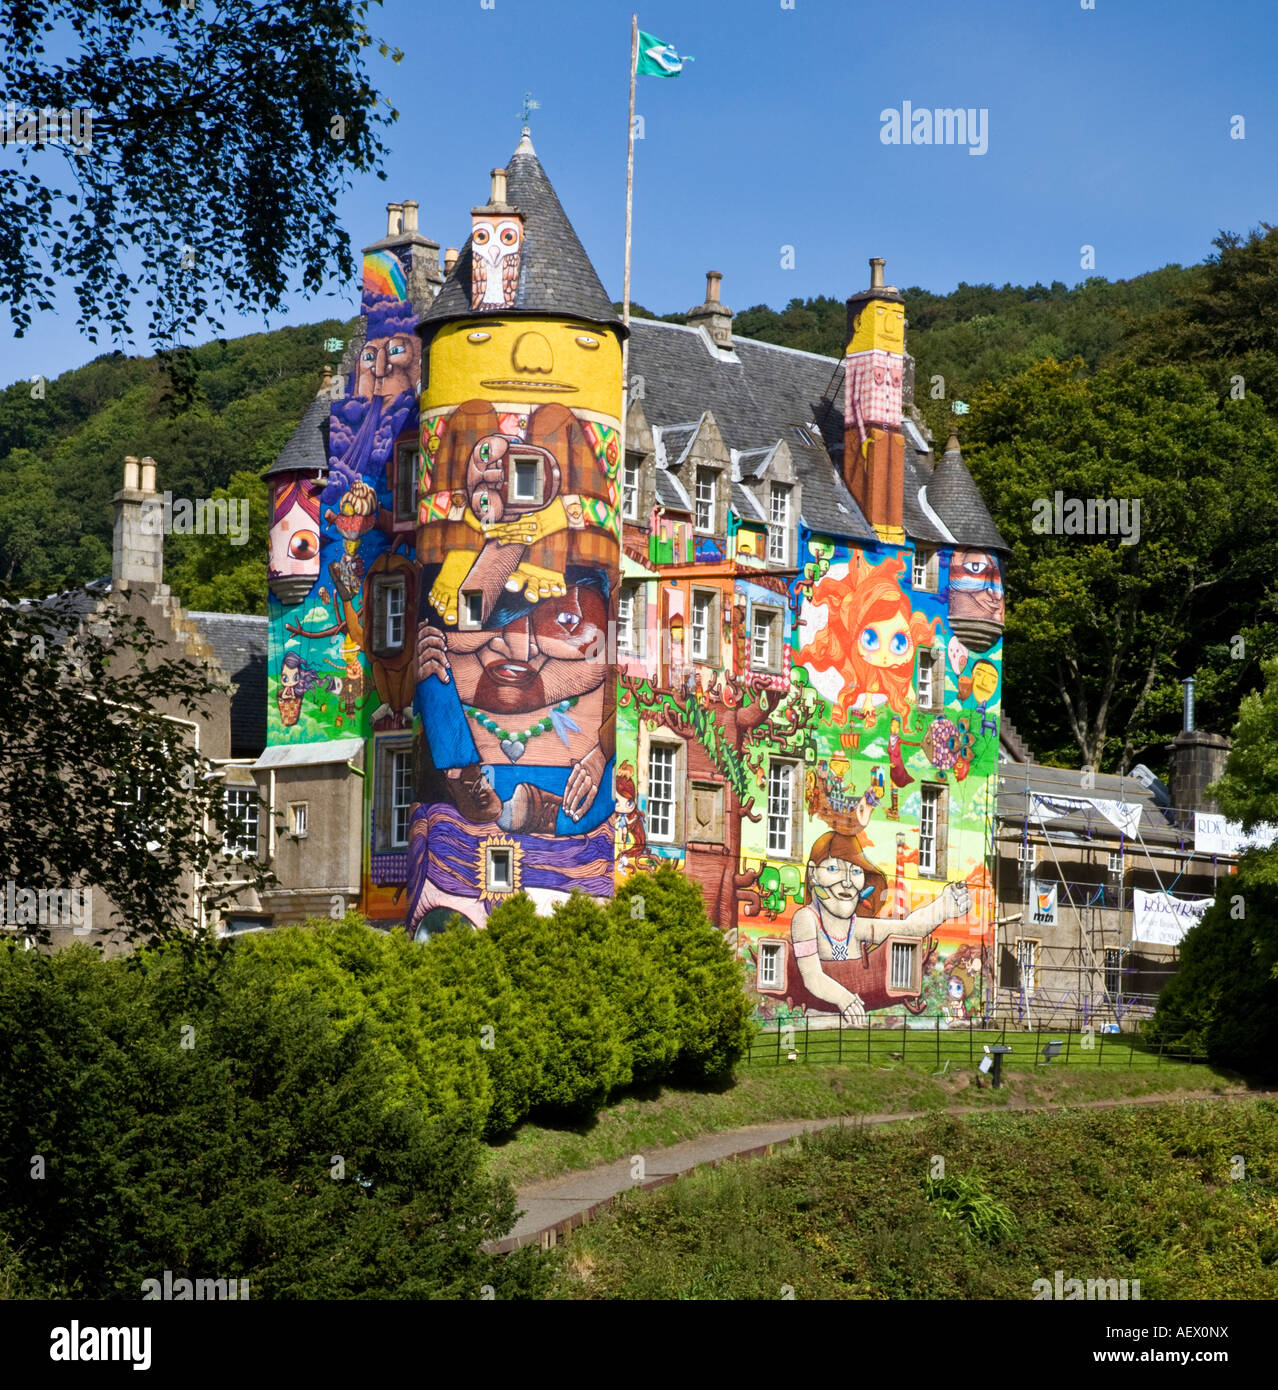 El proyecto de graffiti en Kelburn Castle Ayrshire pintados por artistas brasileños Os Gemeos, Nina Pandolfo y nunca Foto de stock